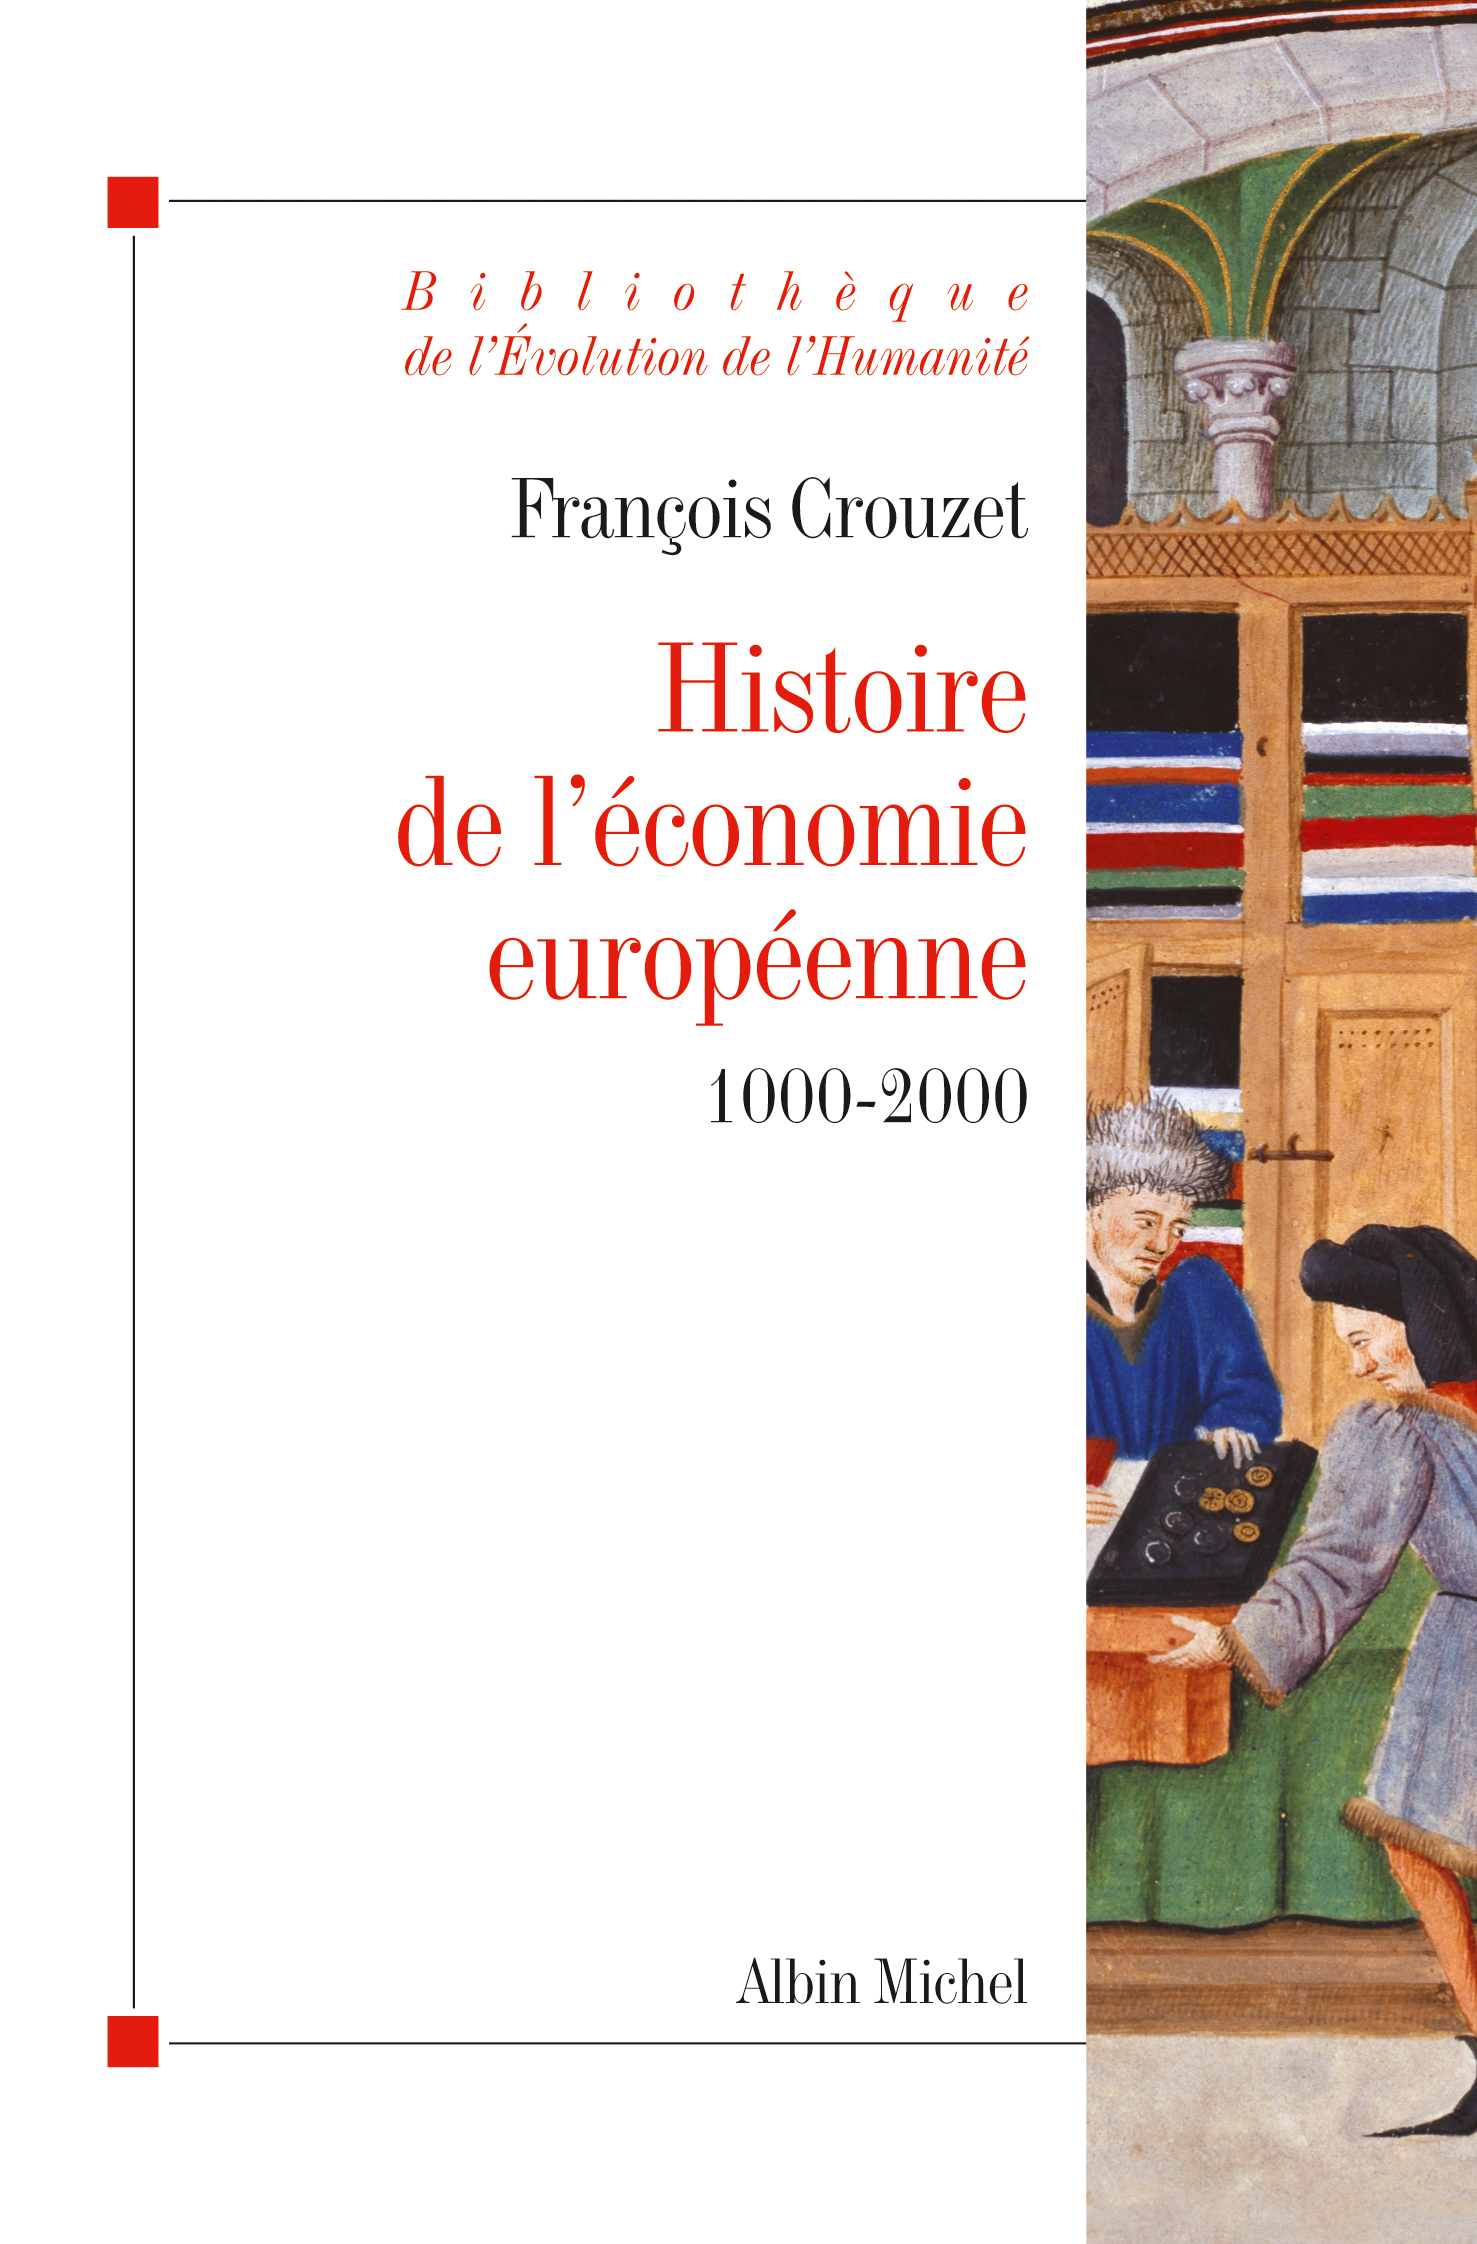 Couverture du livre Histoire de l'économie européenne 1000-2000